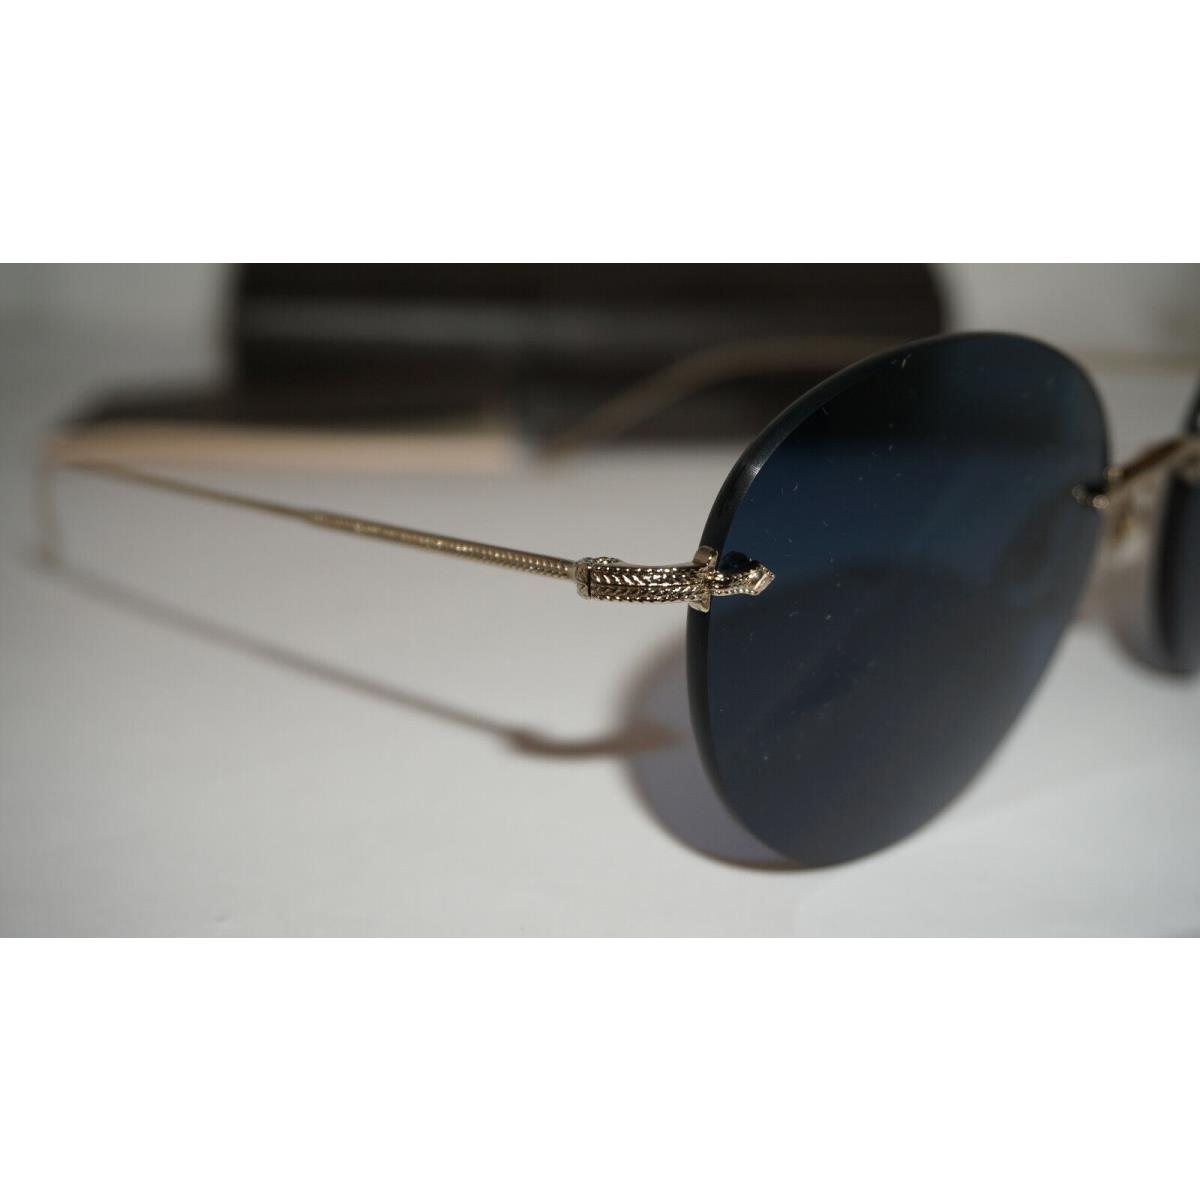 Oliver Peoples sunglasses  - Soft Gold Frame, Blue Lens 2